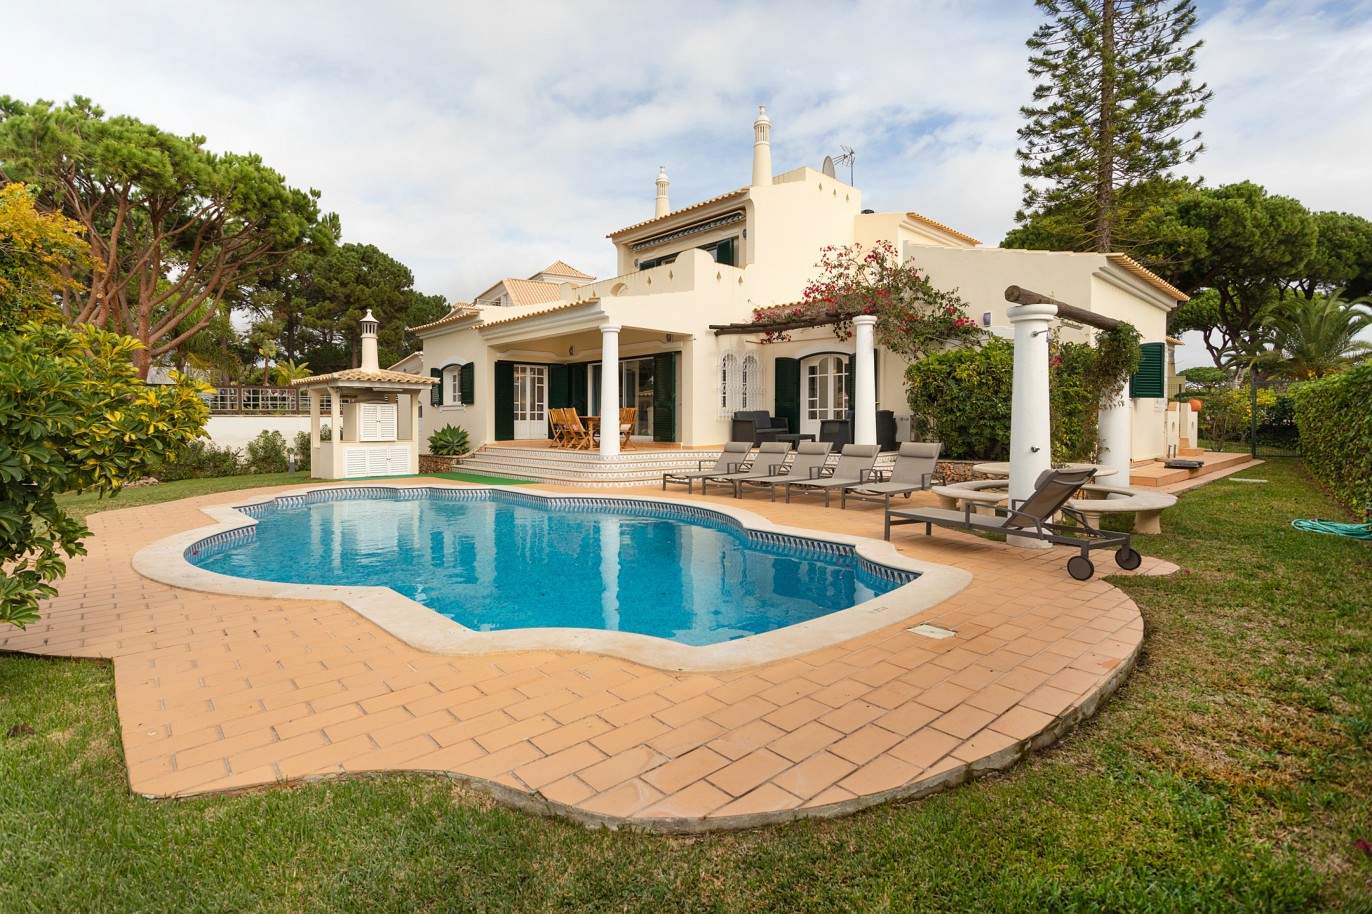 5 Bedroom Villa with pool for sale in Vilamoura, Algarve_212567